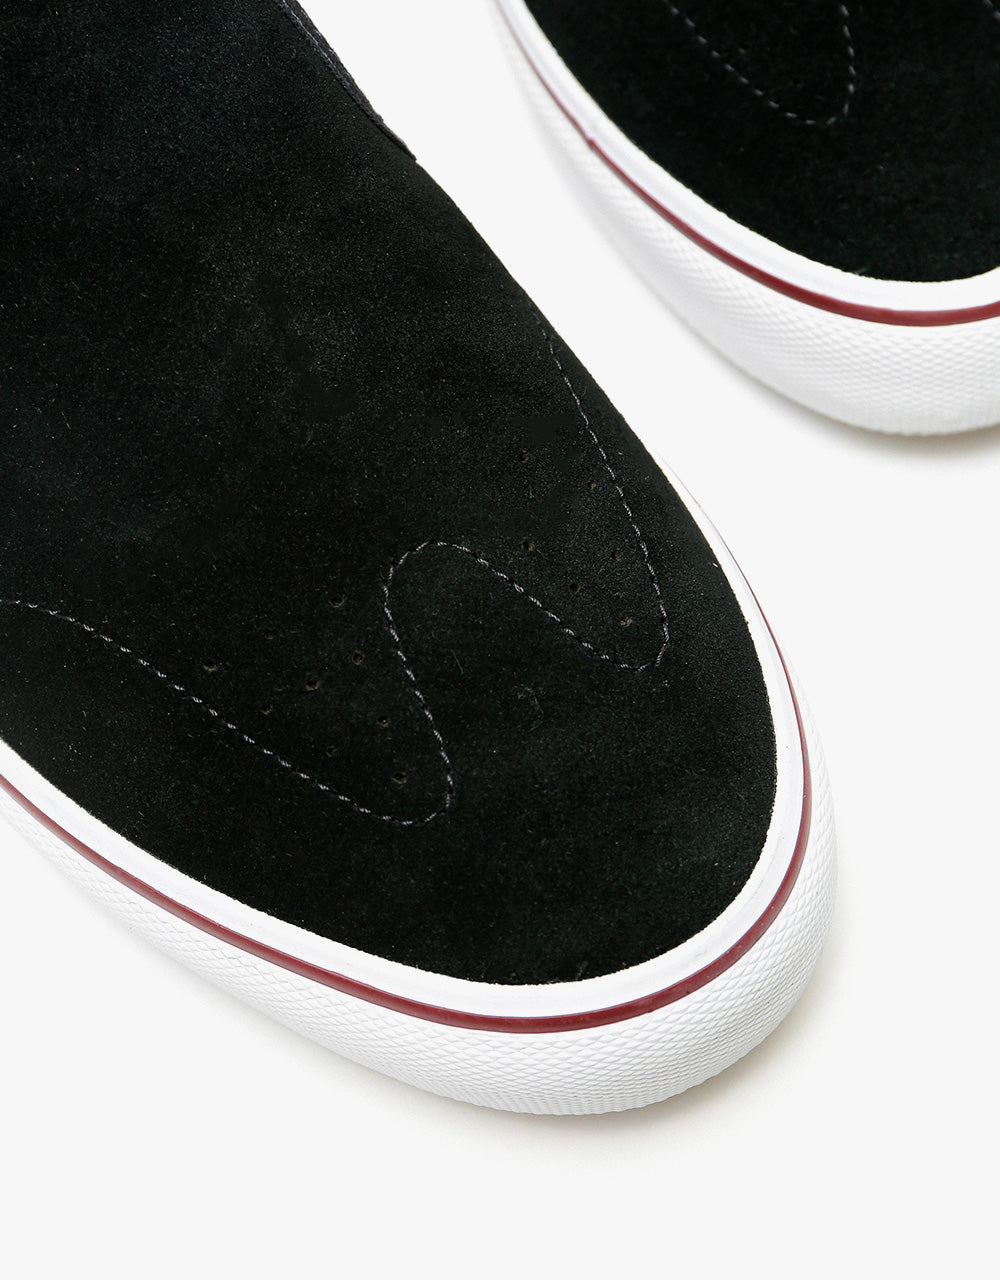 Etnies Marana Slip Skate Shoes - Black